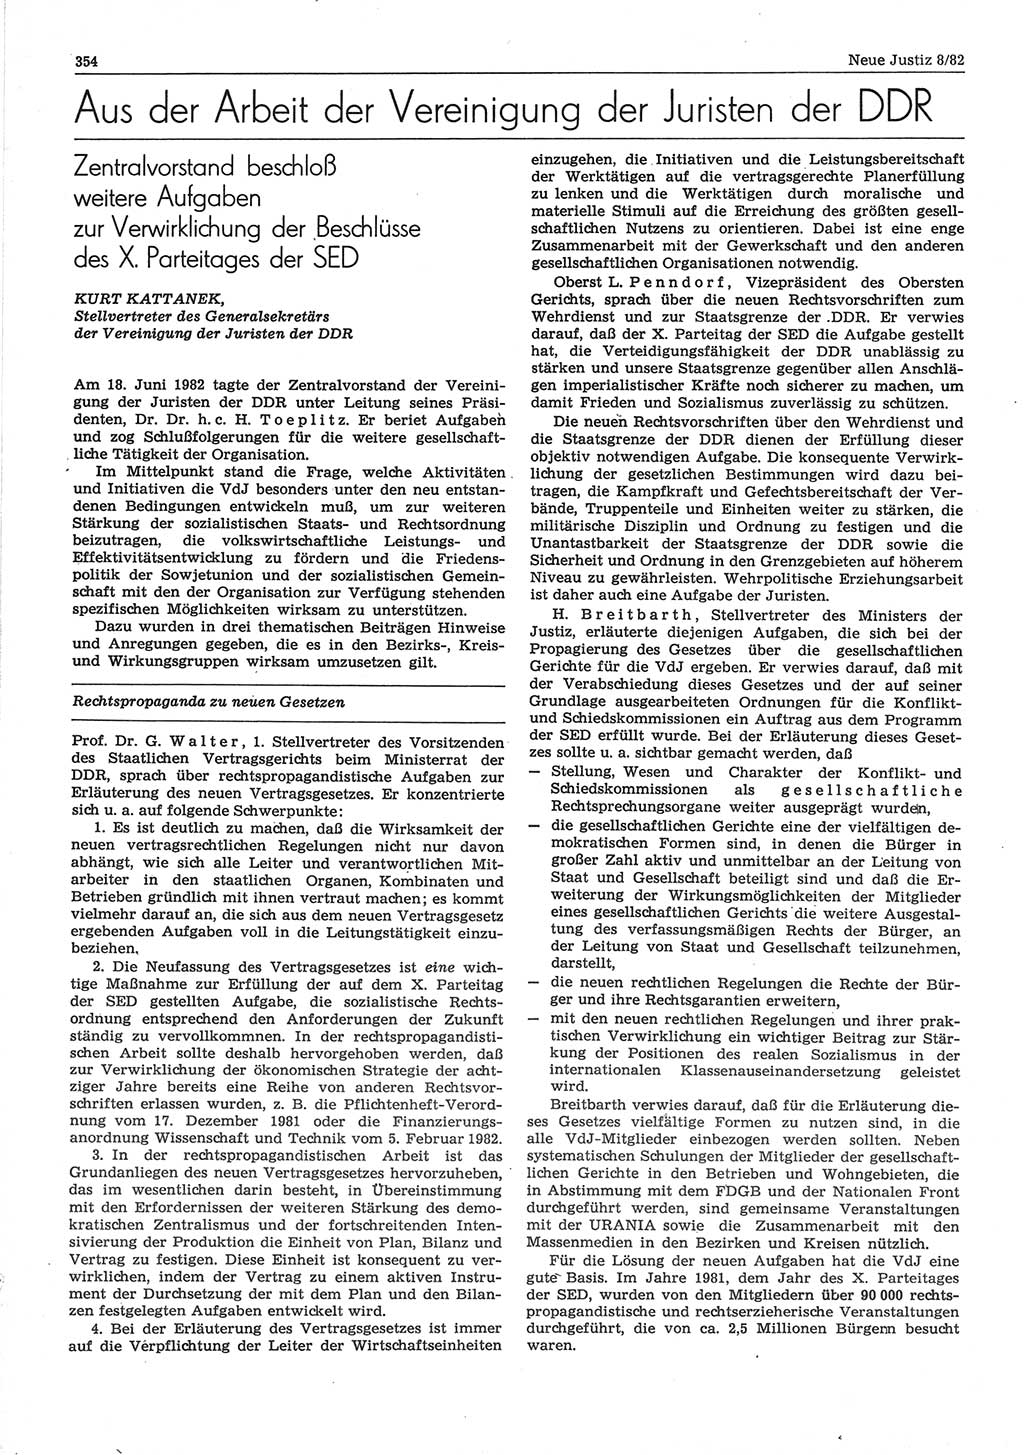 Neue Justiz (NJ), Zeitschrift für sozialistisches Recht und Gesetzlichkeit [Deutsche Demokratische Republik (DDR)], 36. Jahrgang 1982, Seite 354 (NJ DDR 1982, S. 354)